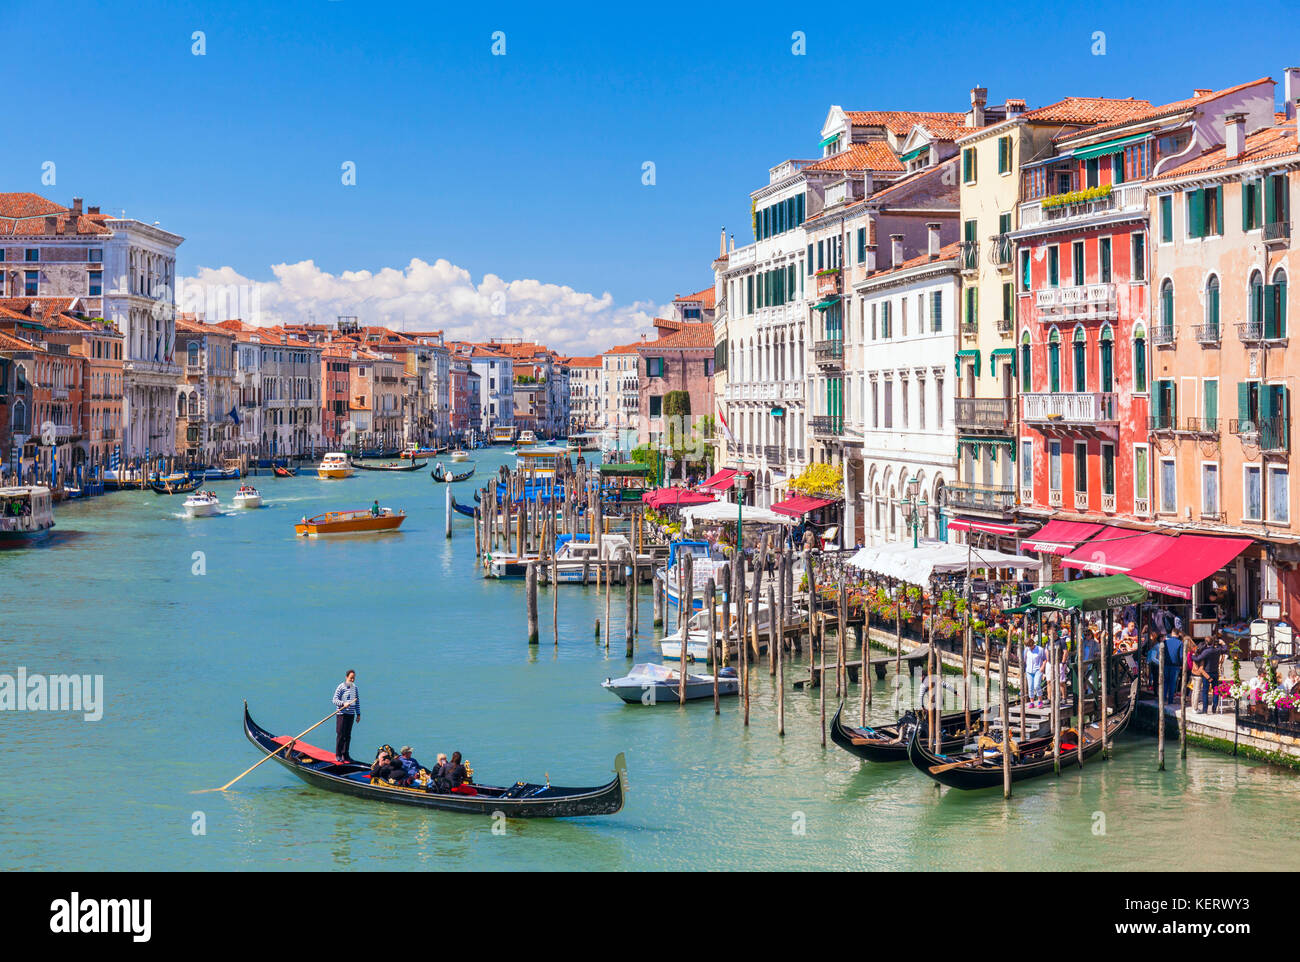 Venise ITALIE VENISE Gondolier aviron une gondole pleine de touristes sur une gondole sur le grand canal Venise Italie Europe de l'UE Banque D'Images